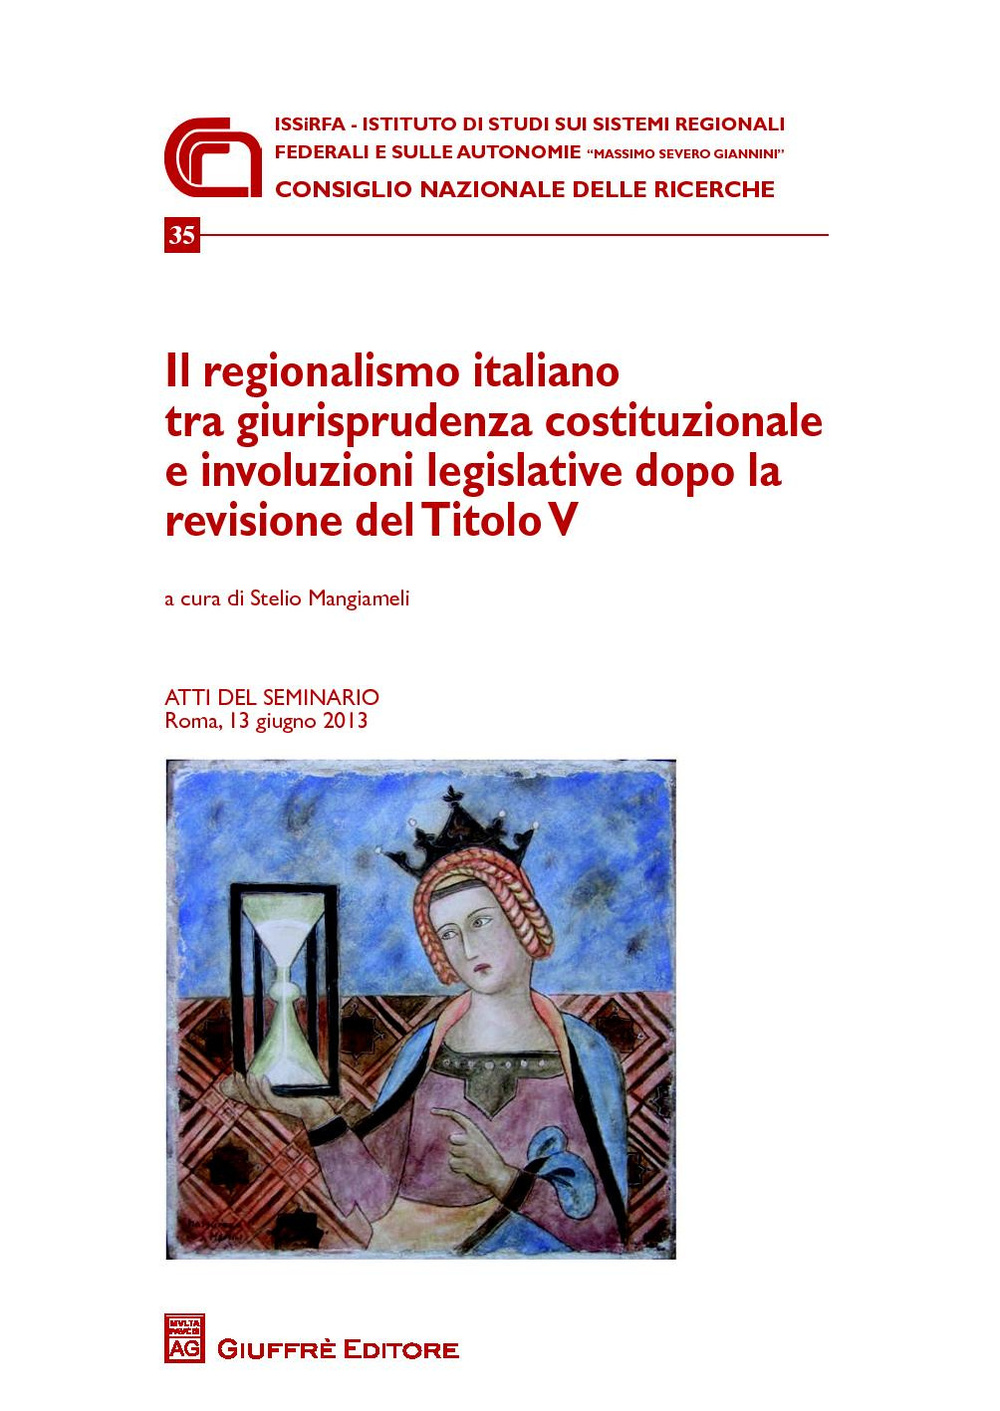 Il regionalismo italiano tra giurisprudenza costituzionale e involuzioni legislative dopo la revisione del titolo V. Atti del Seminario (Roma, 13 giugno 2013)